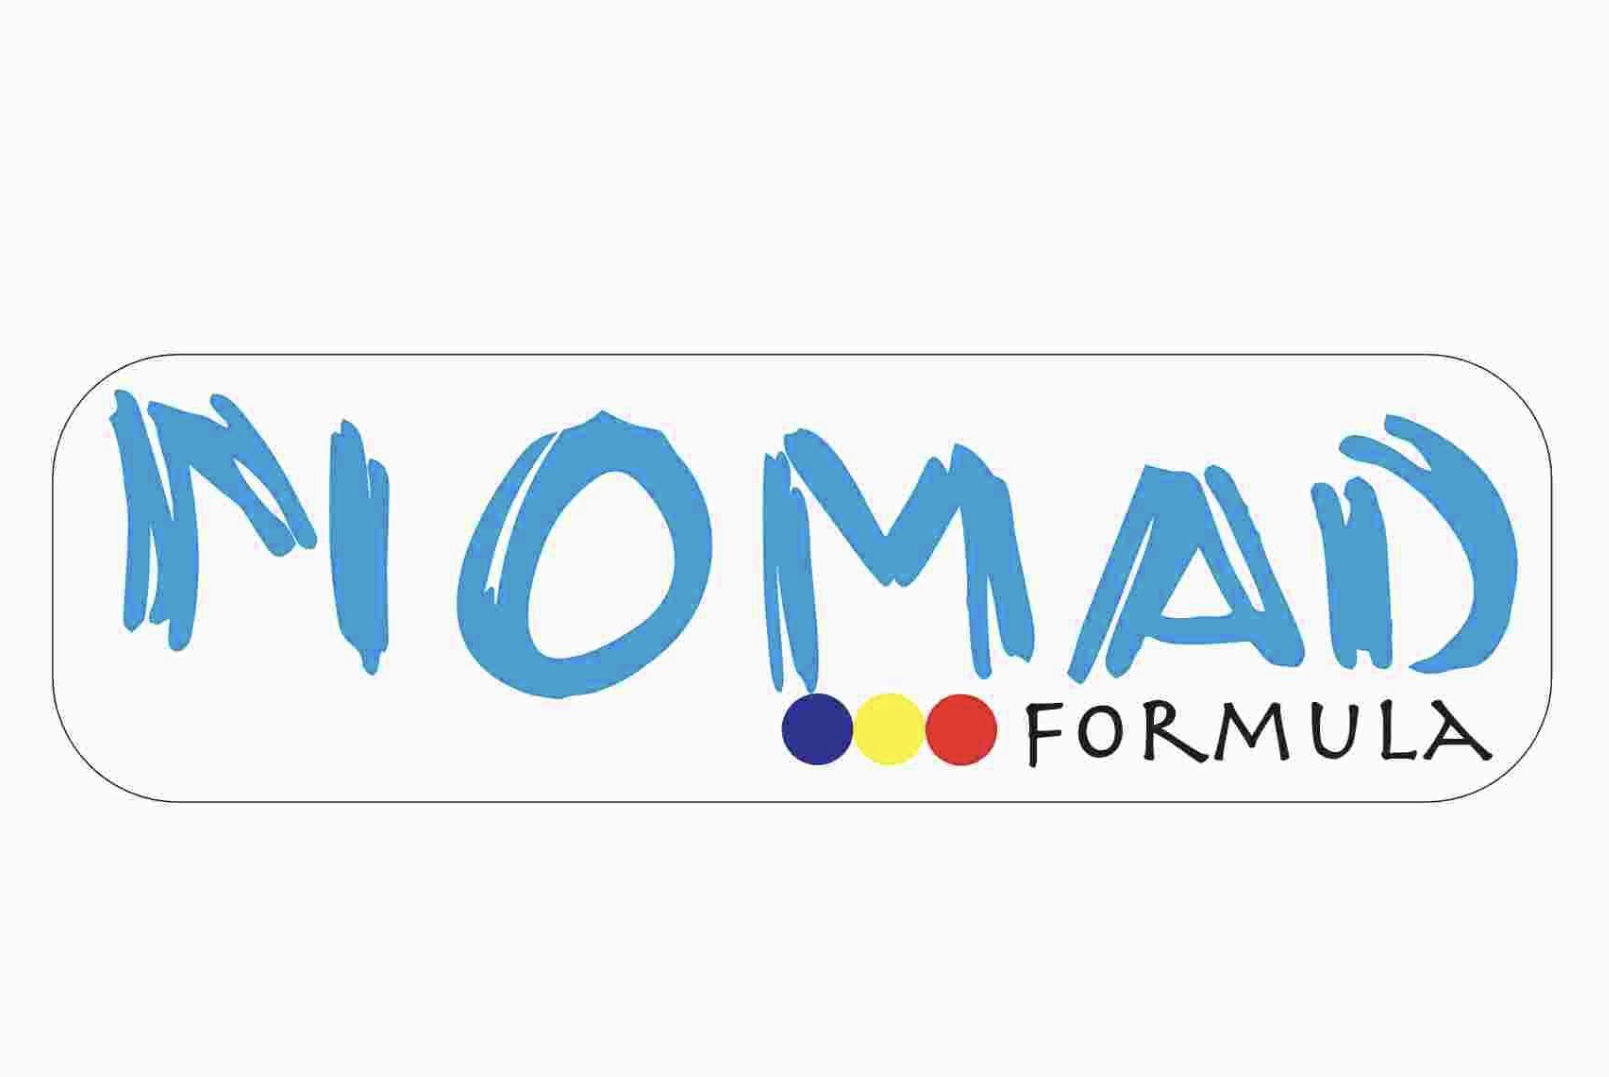 ACS NOMAD FORMULA logo